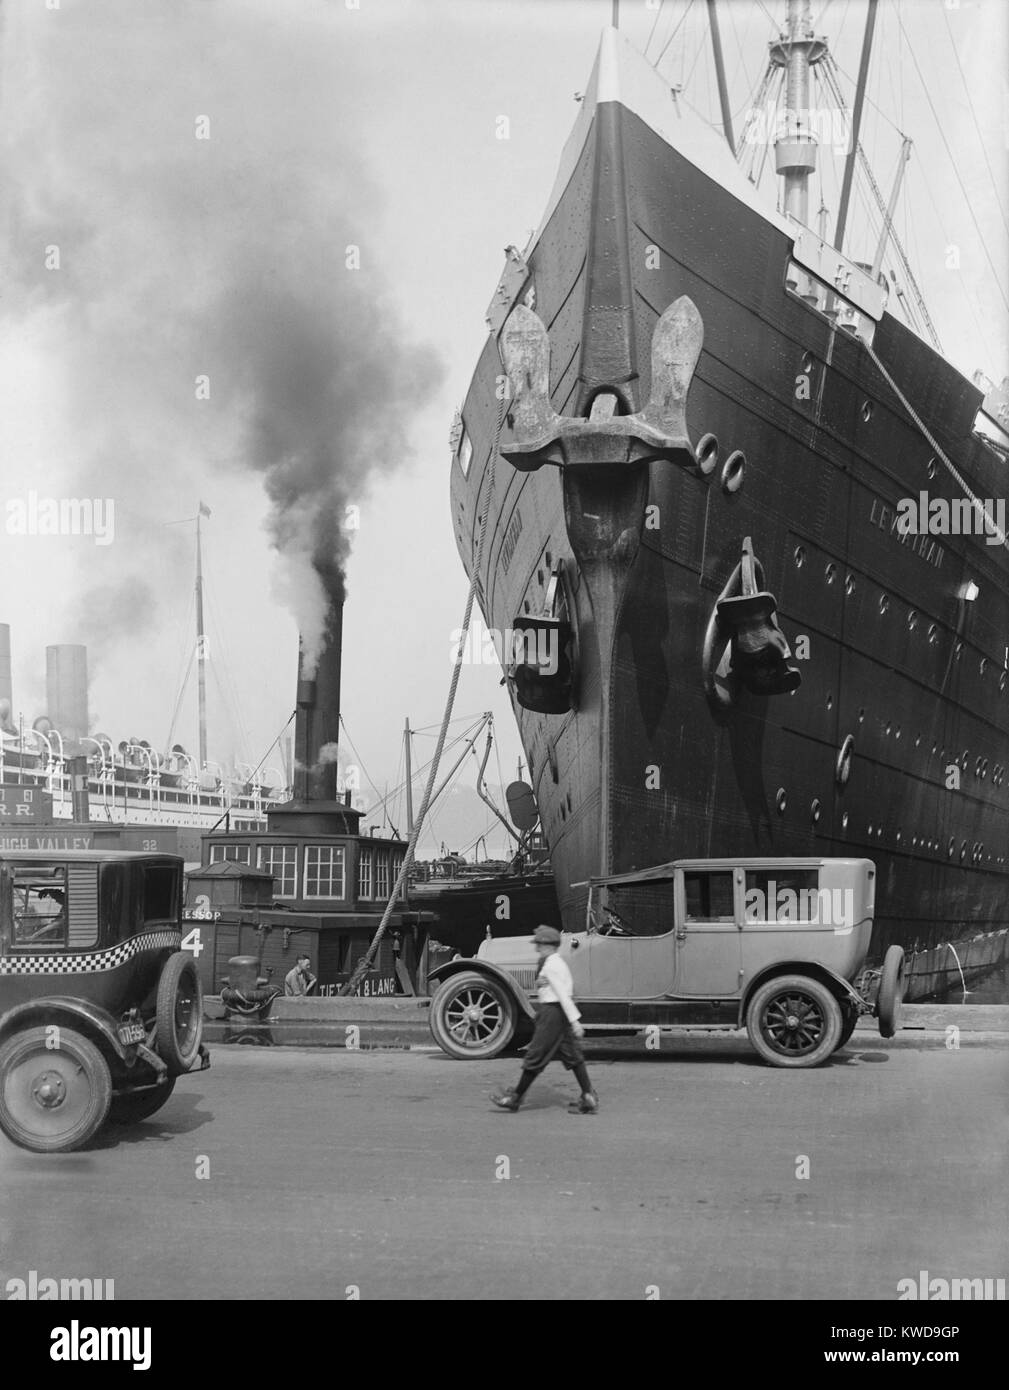 Der ozean Liner "Leviathan" an einem New York City Pier, C. 1920er-Jahre. Sie war ursprünglich die deutsche Fahne Passagierschiff 'Vaterland', wurde aber als Troop Transport von April 1917-1919 beschlagnahmt. Sie blieb in politischen Schwebezustand von 1919 bis 1922, als sie in die größte und schnellste Schiff der US-Handelsmarine modernisiert (BSLOC_2016_10_182) Stockfoto